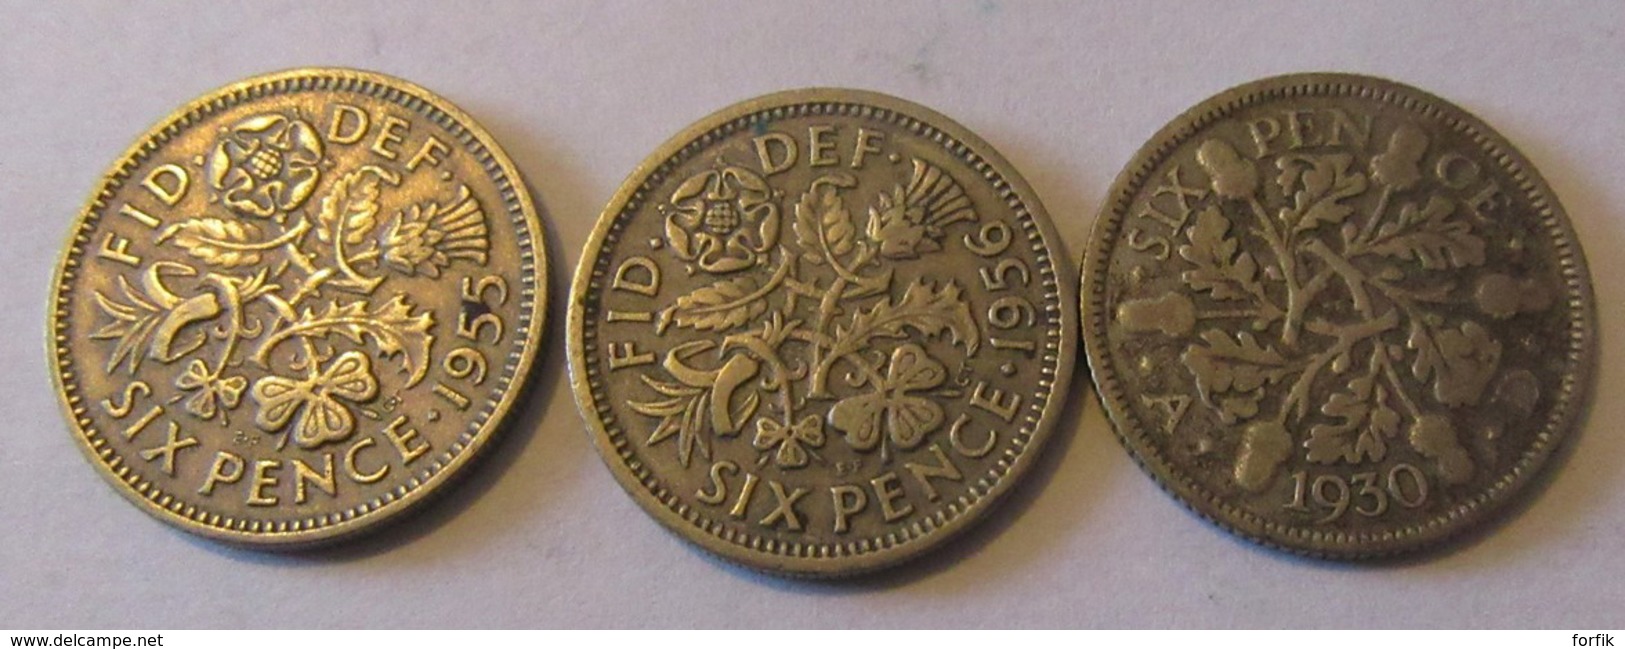 Grande-Bretagne / Royaume-Uni / Angleterre / Jersey - Vrac de 37 Monnaies 19 et 20e siècles dont Britannia 1806